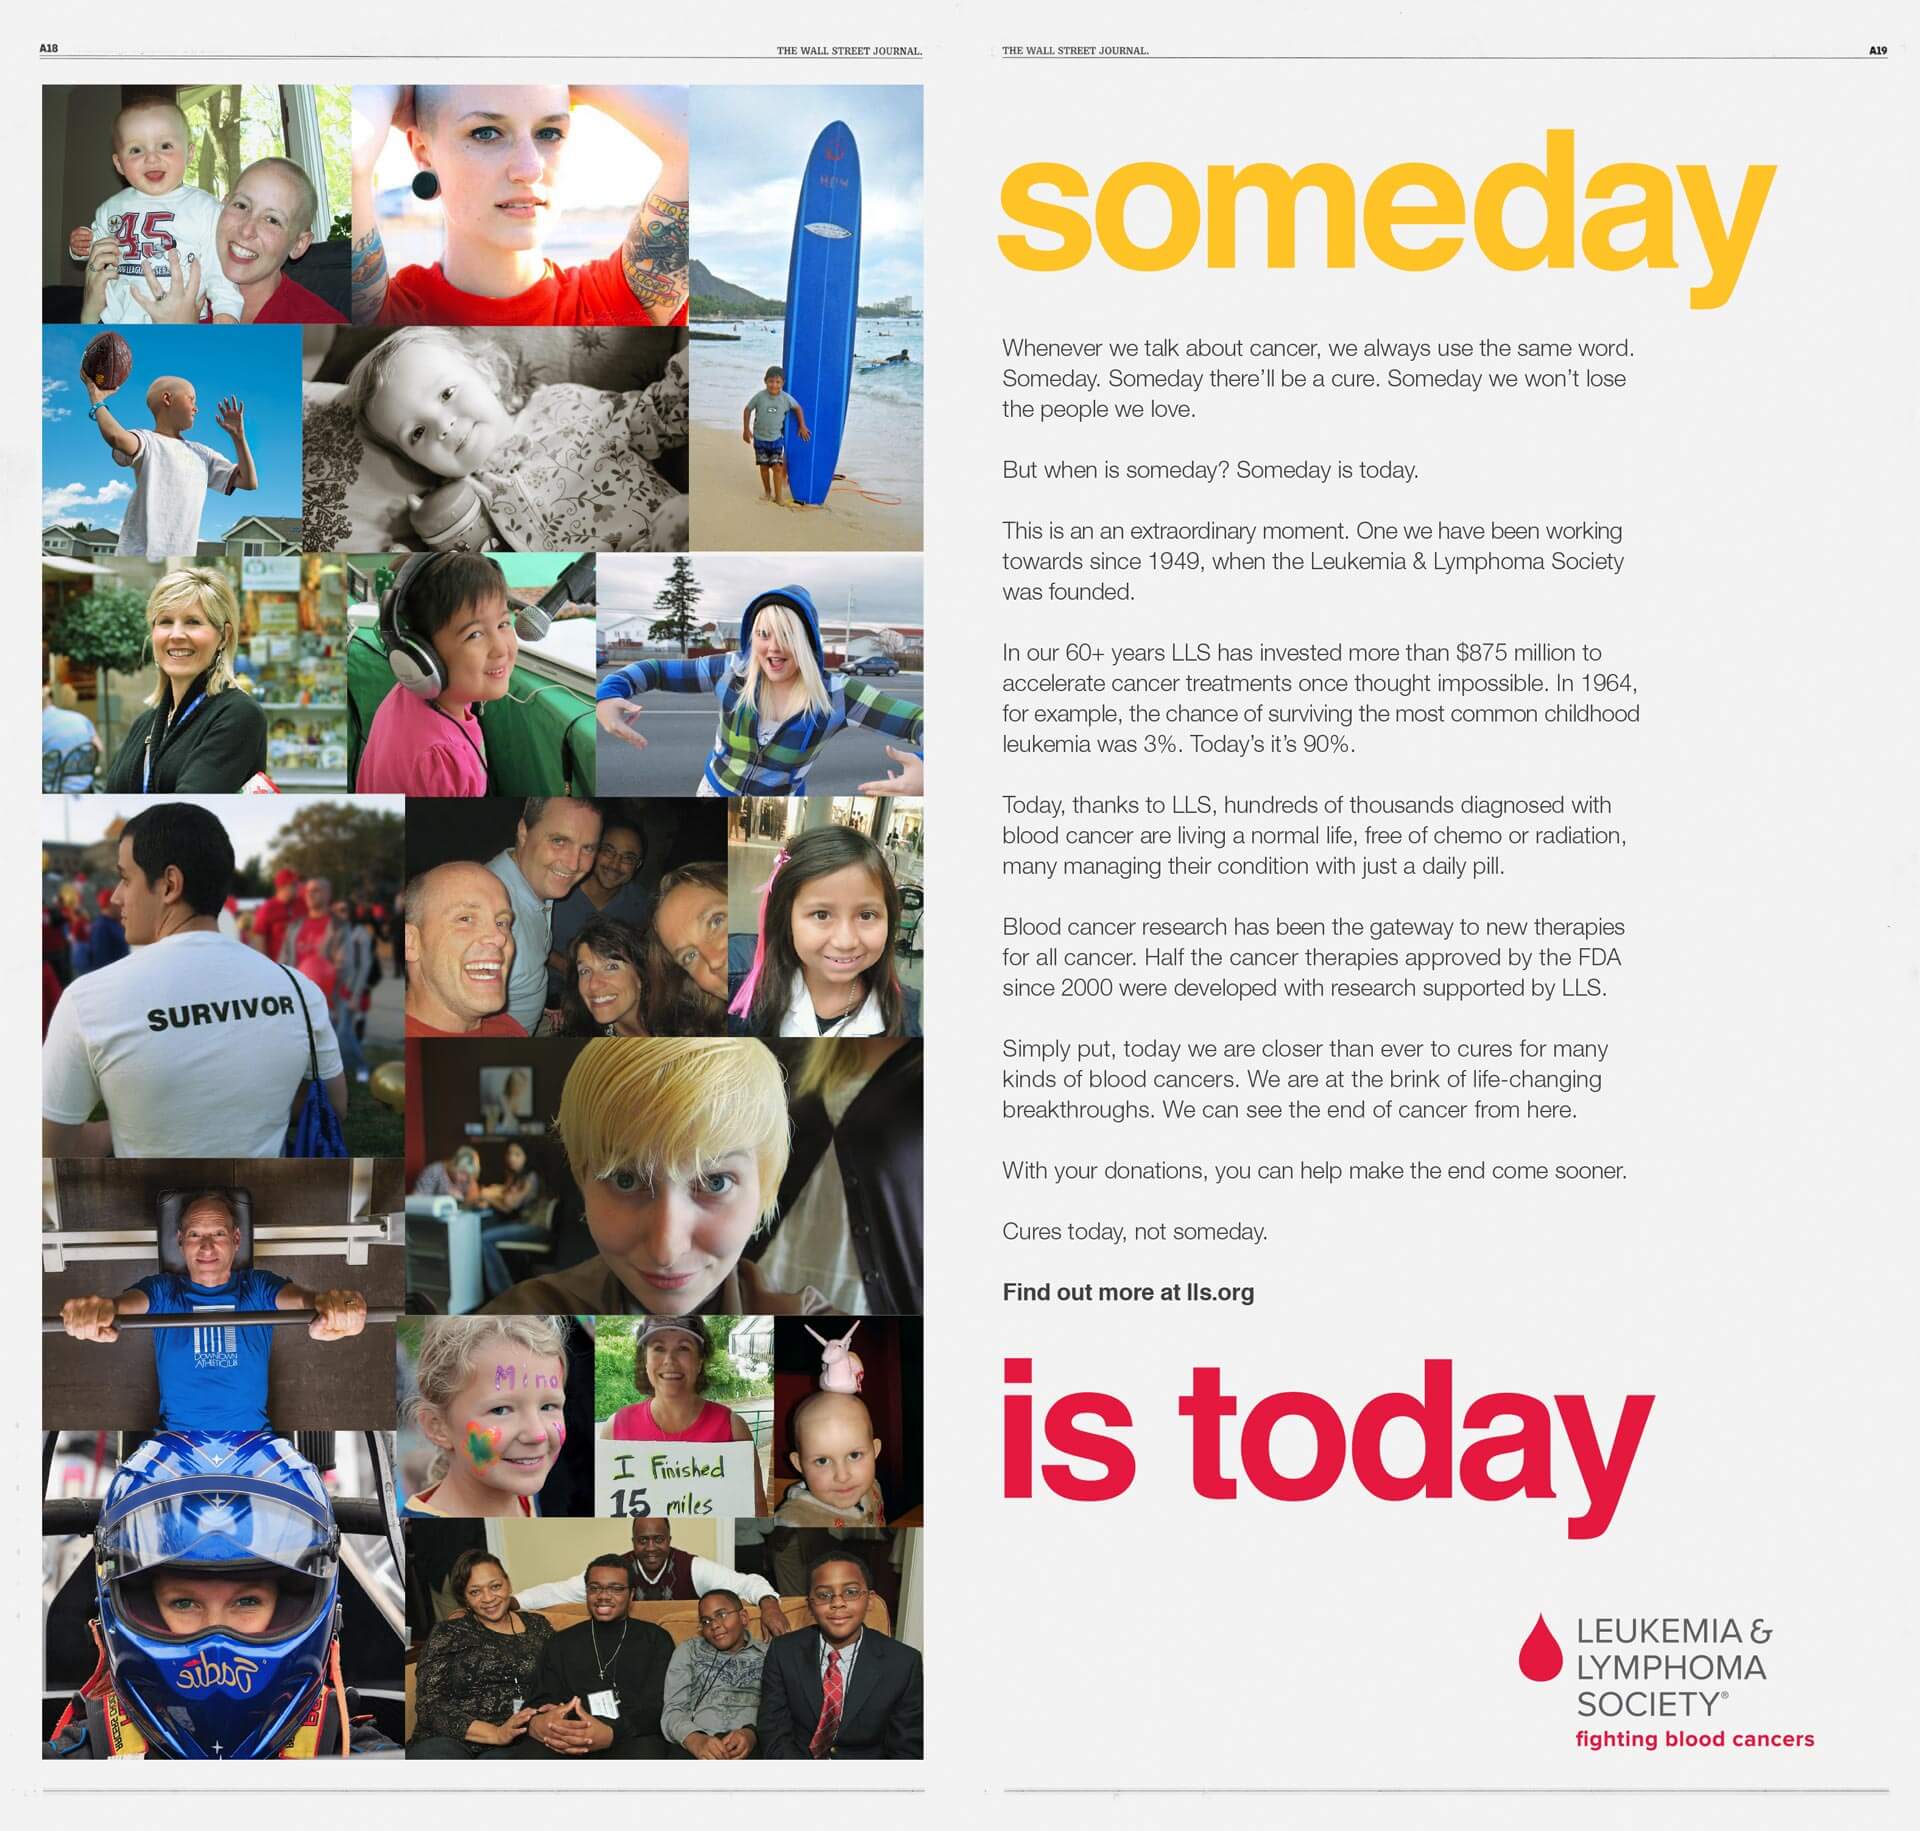 Leukemia & Lymphoma Society. Someday is today